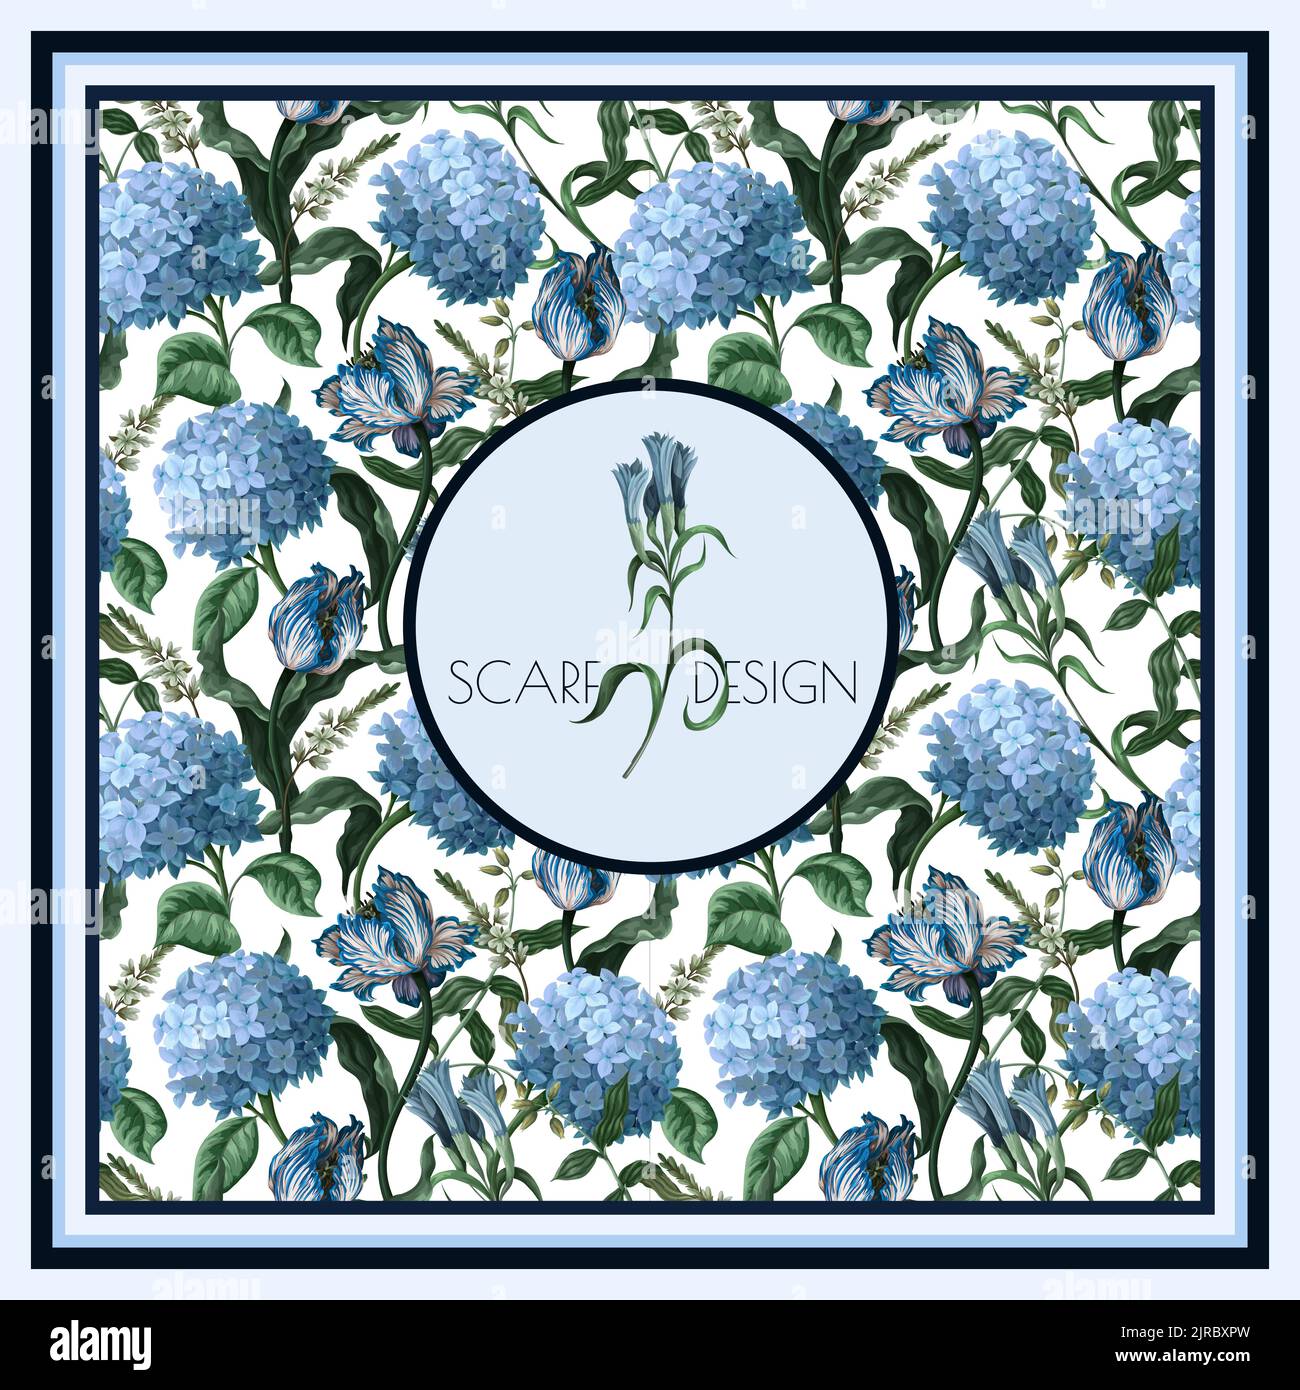 Foulard à motifs avec hortensias bleus et autres fleurs. Vecteur. Illustration de Vecteur